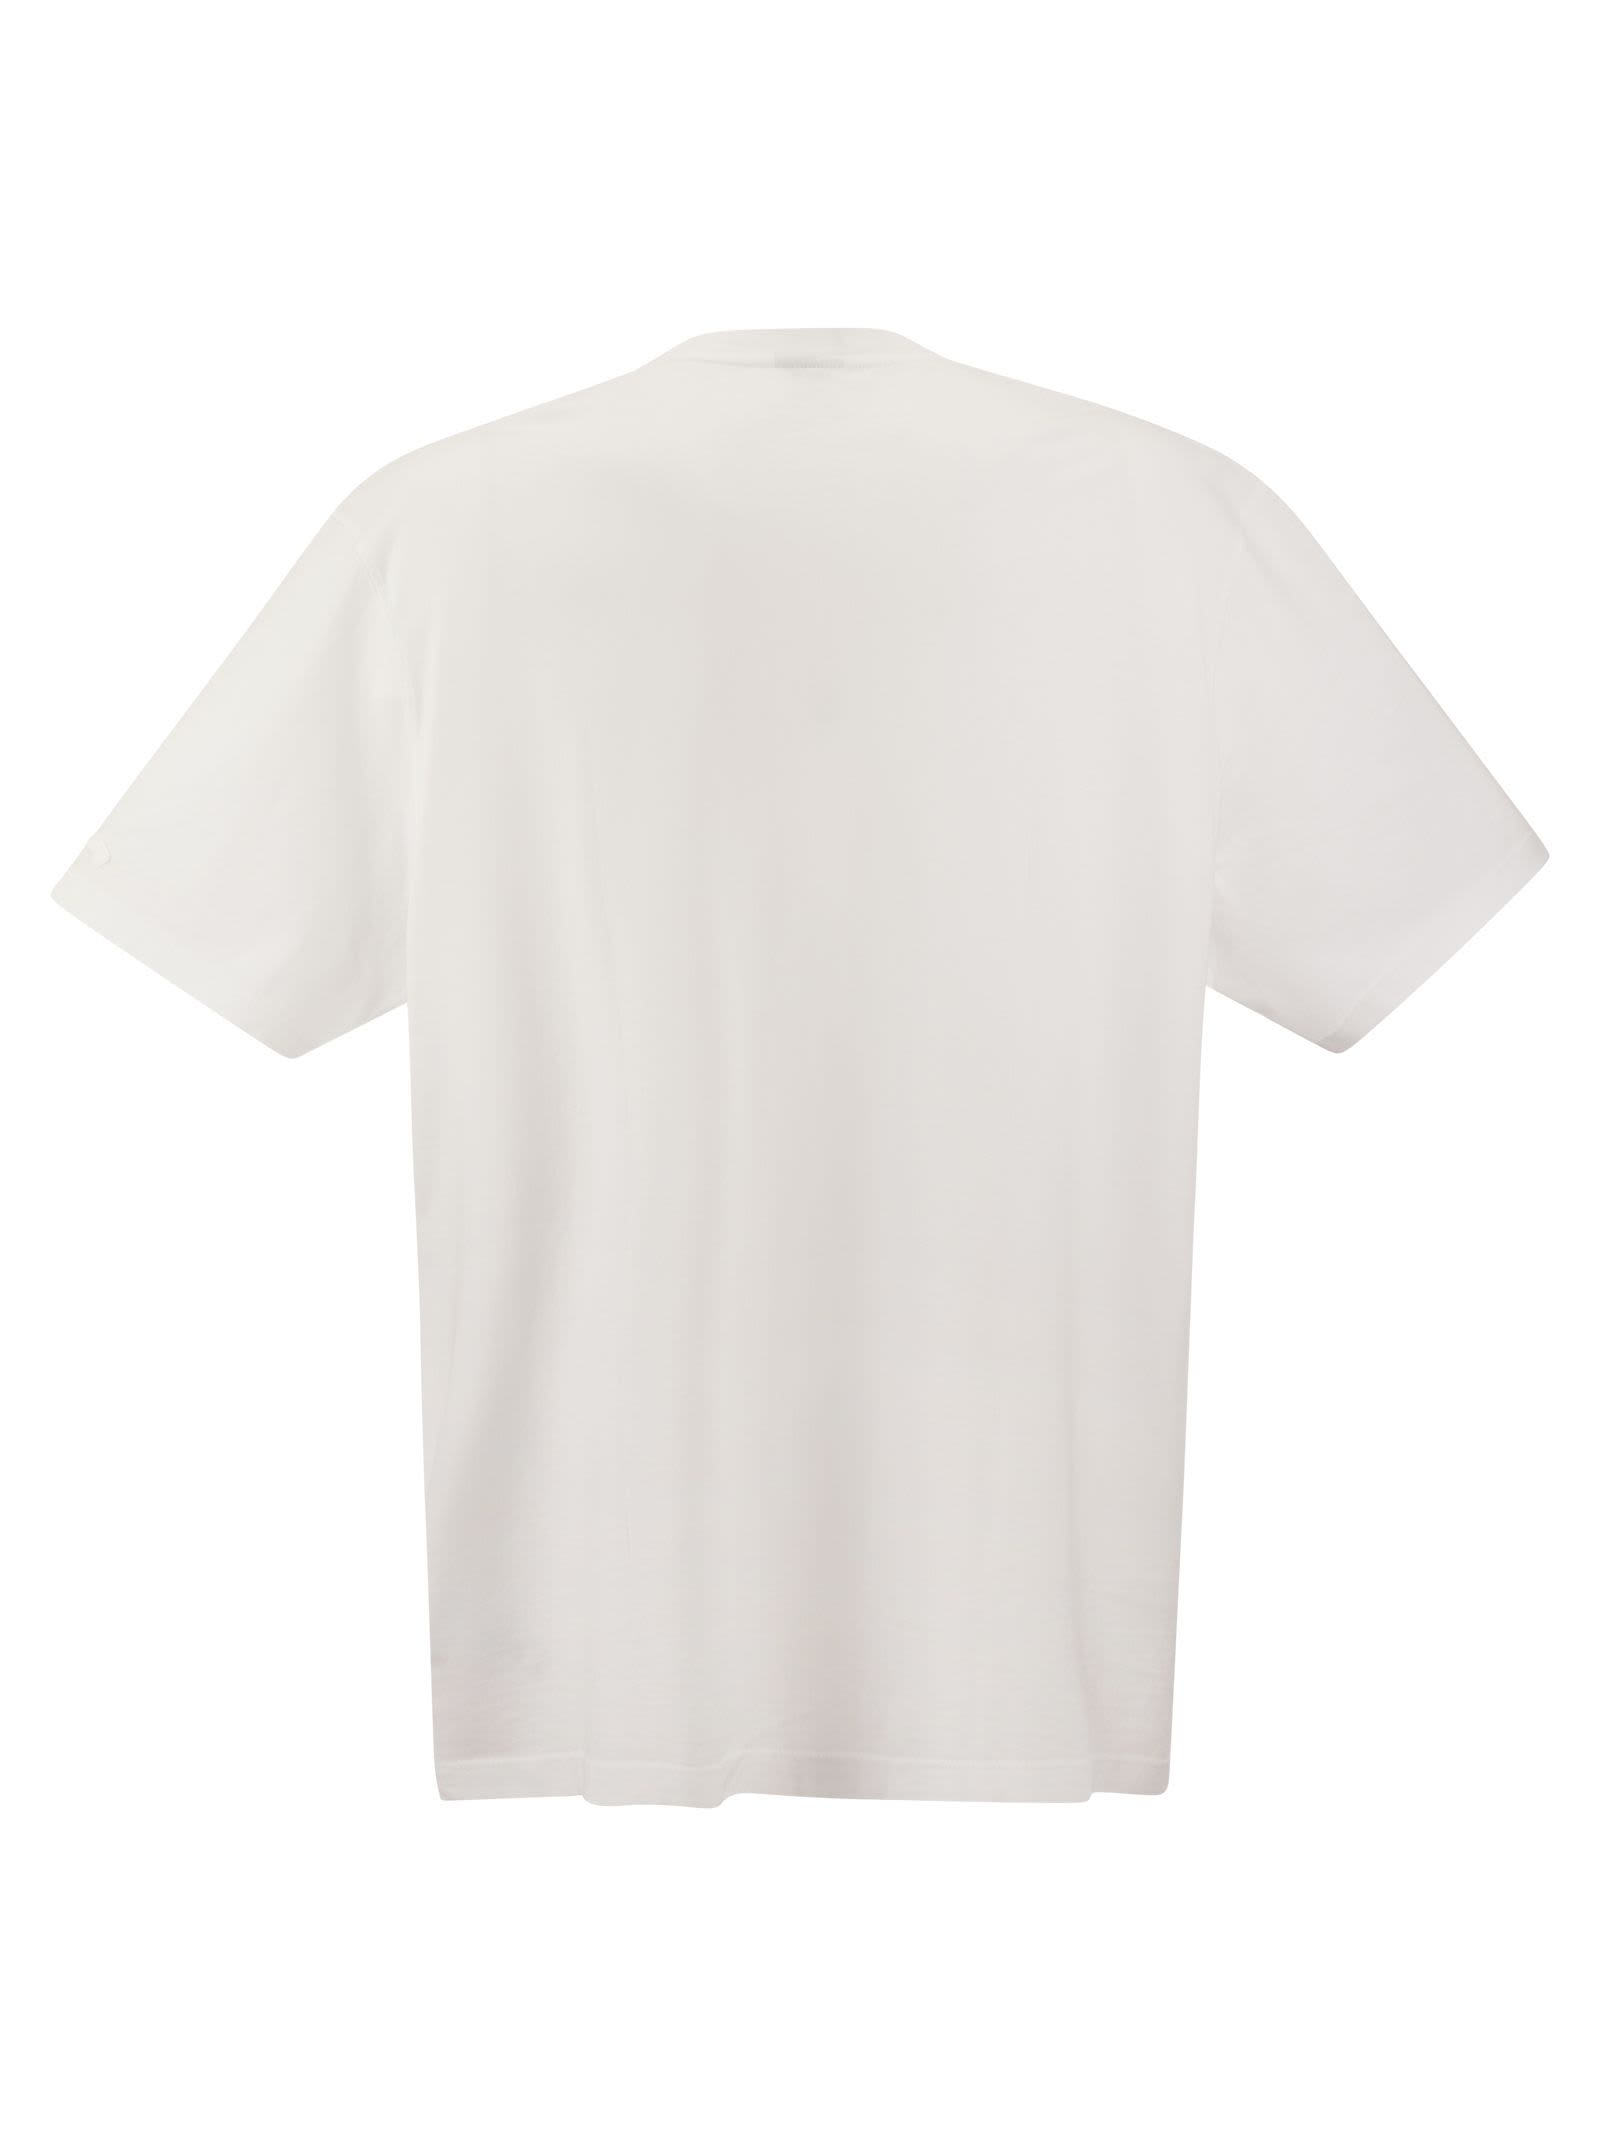 Shop Paul&amp;shark Garment Dyed Cotton Jersey T-shirt